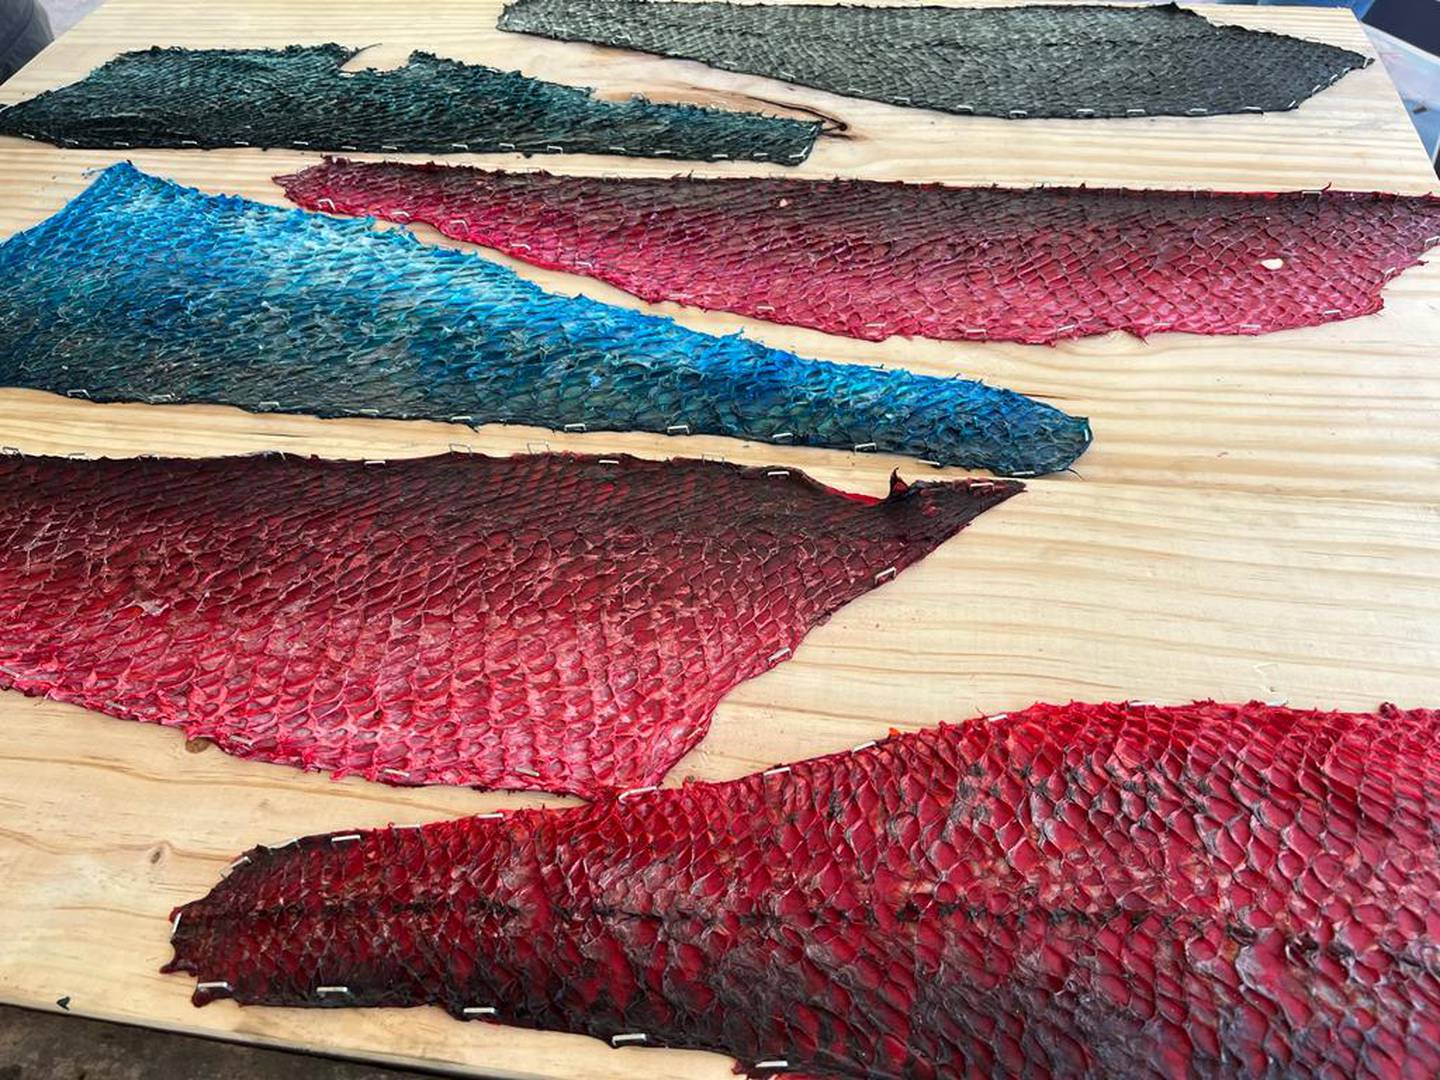 Familias pesqueras de Puntarenas ahora harán platica con el cuero del pescado. El cuero del pescado es considerado en Puntarenas como material de desecho que más bien contamina y ahora servirá para ganar dinero